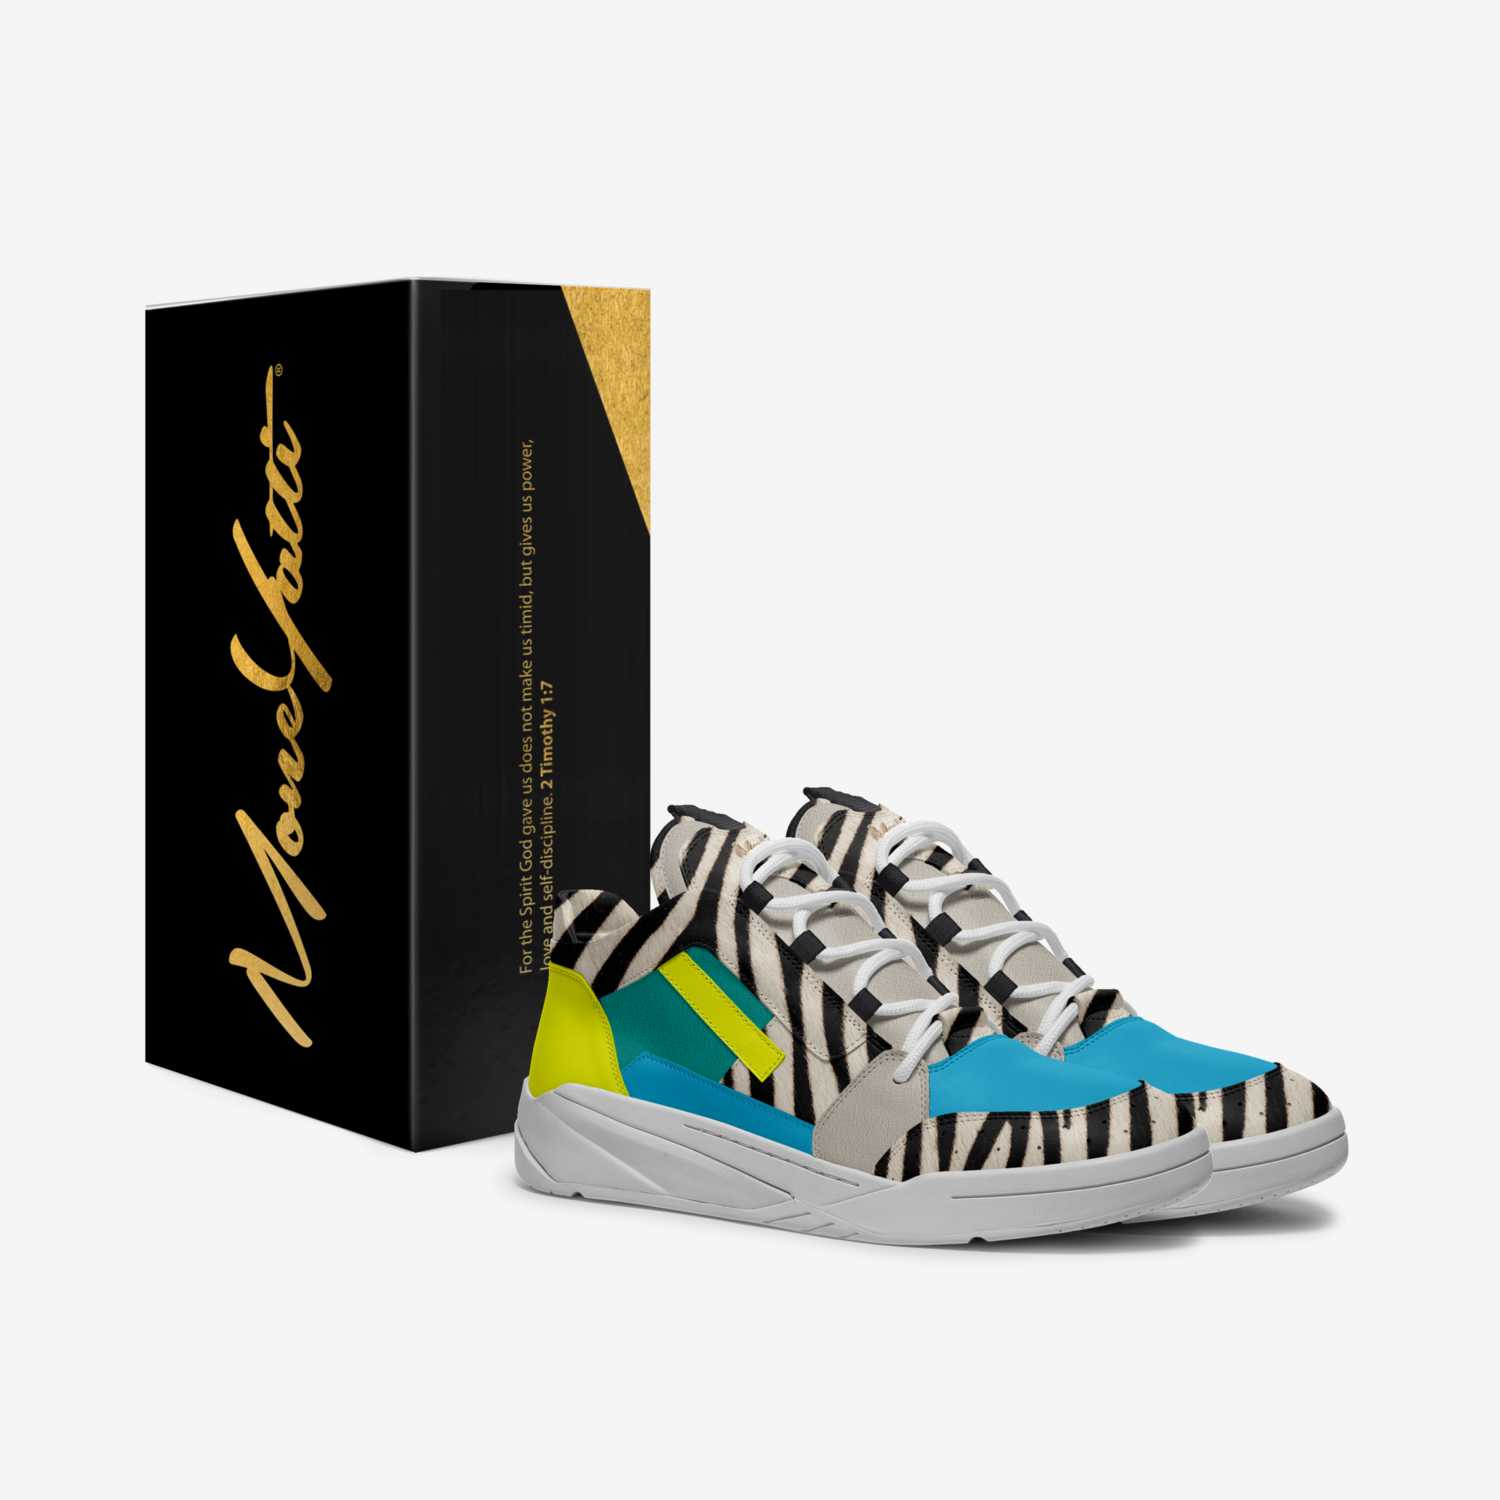 MONEYATTI TURBO 017 custom made in Italy shoes by Moneyatti Brand | Box view